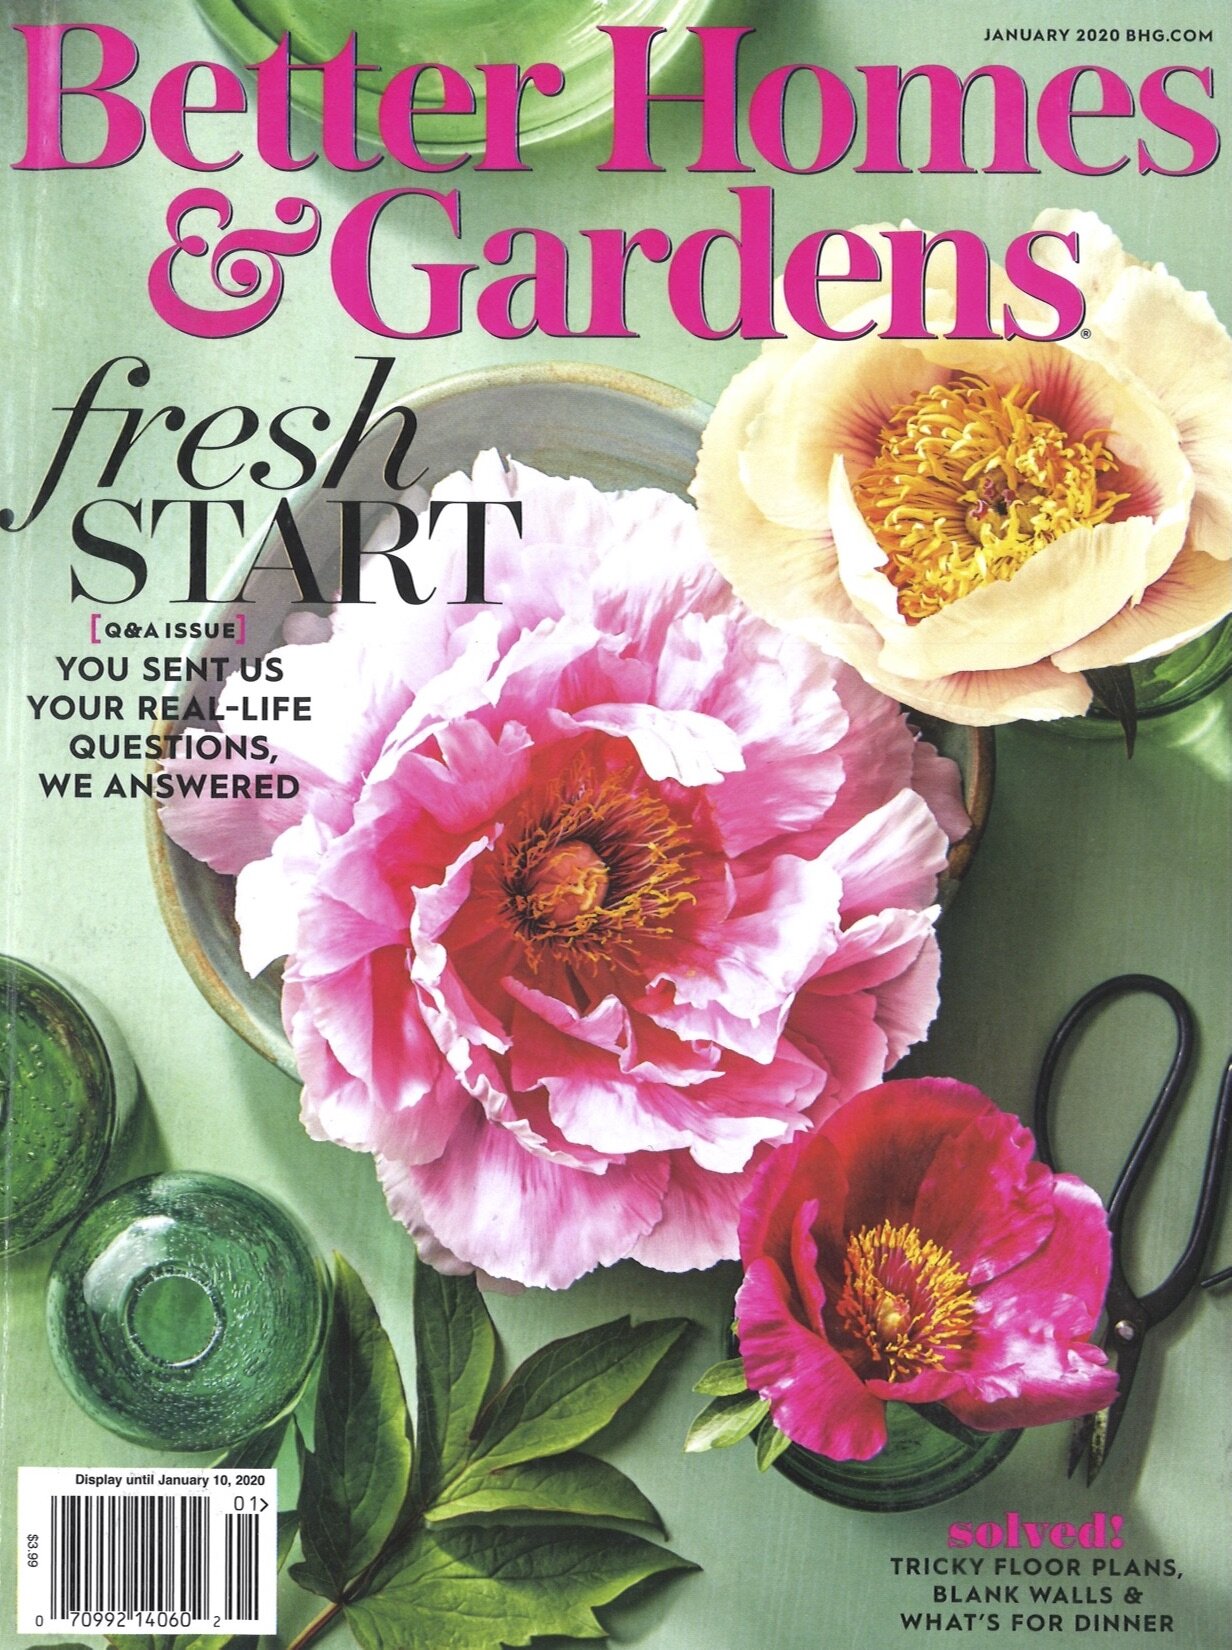 Better Homes & Gardens - January 2020 - Cover.jpg